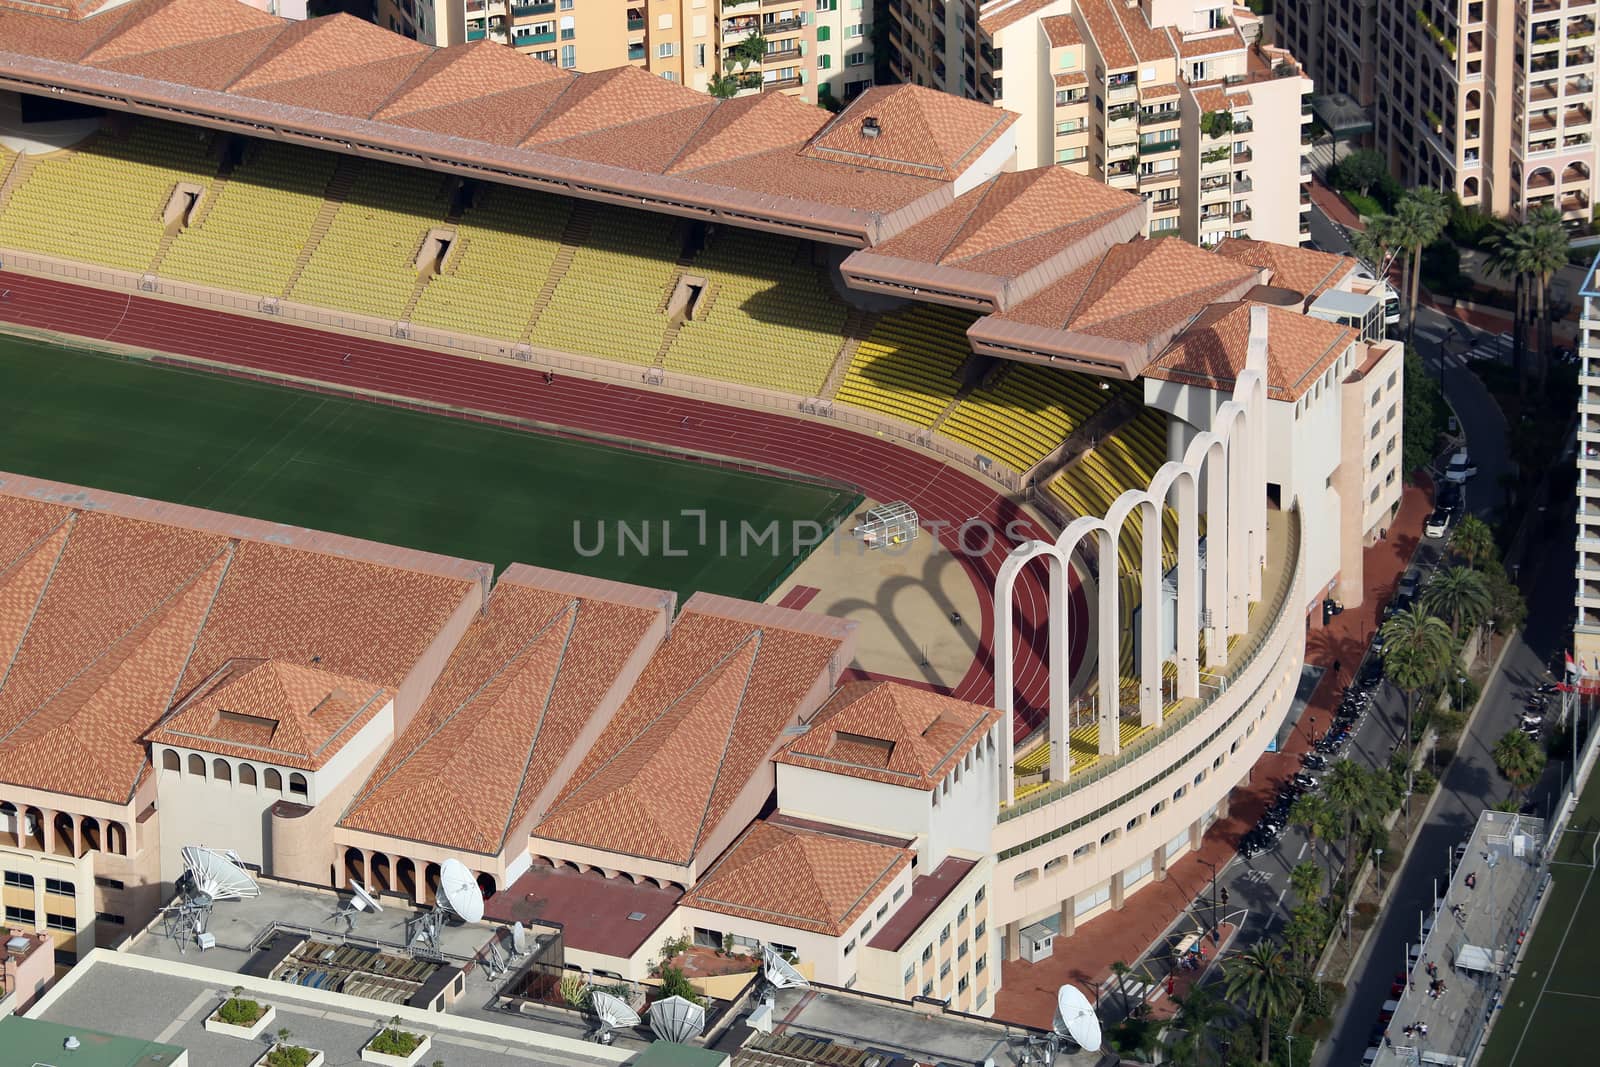 Aerial view of Stade Louis II in Monaco by bensib